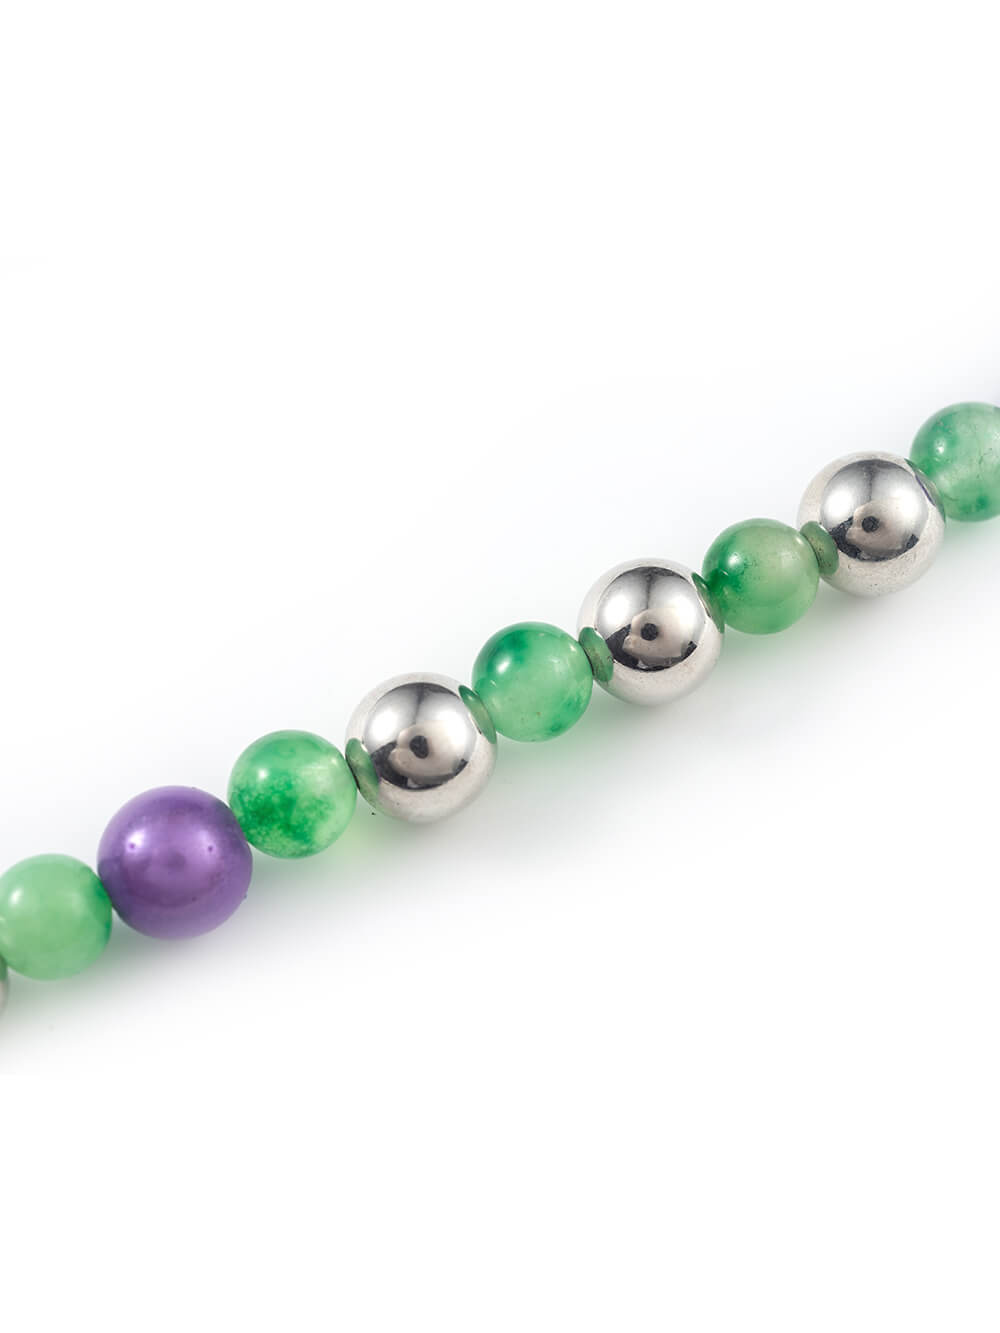 MUKTANK×BLUE  Green Mixed Bead Necklace